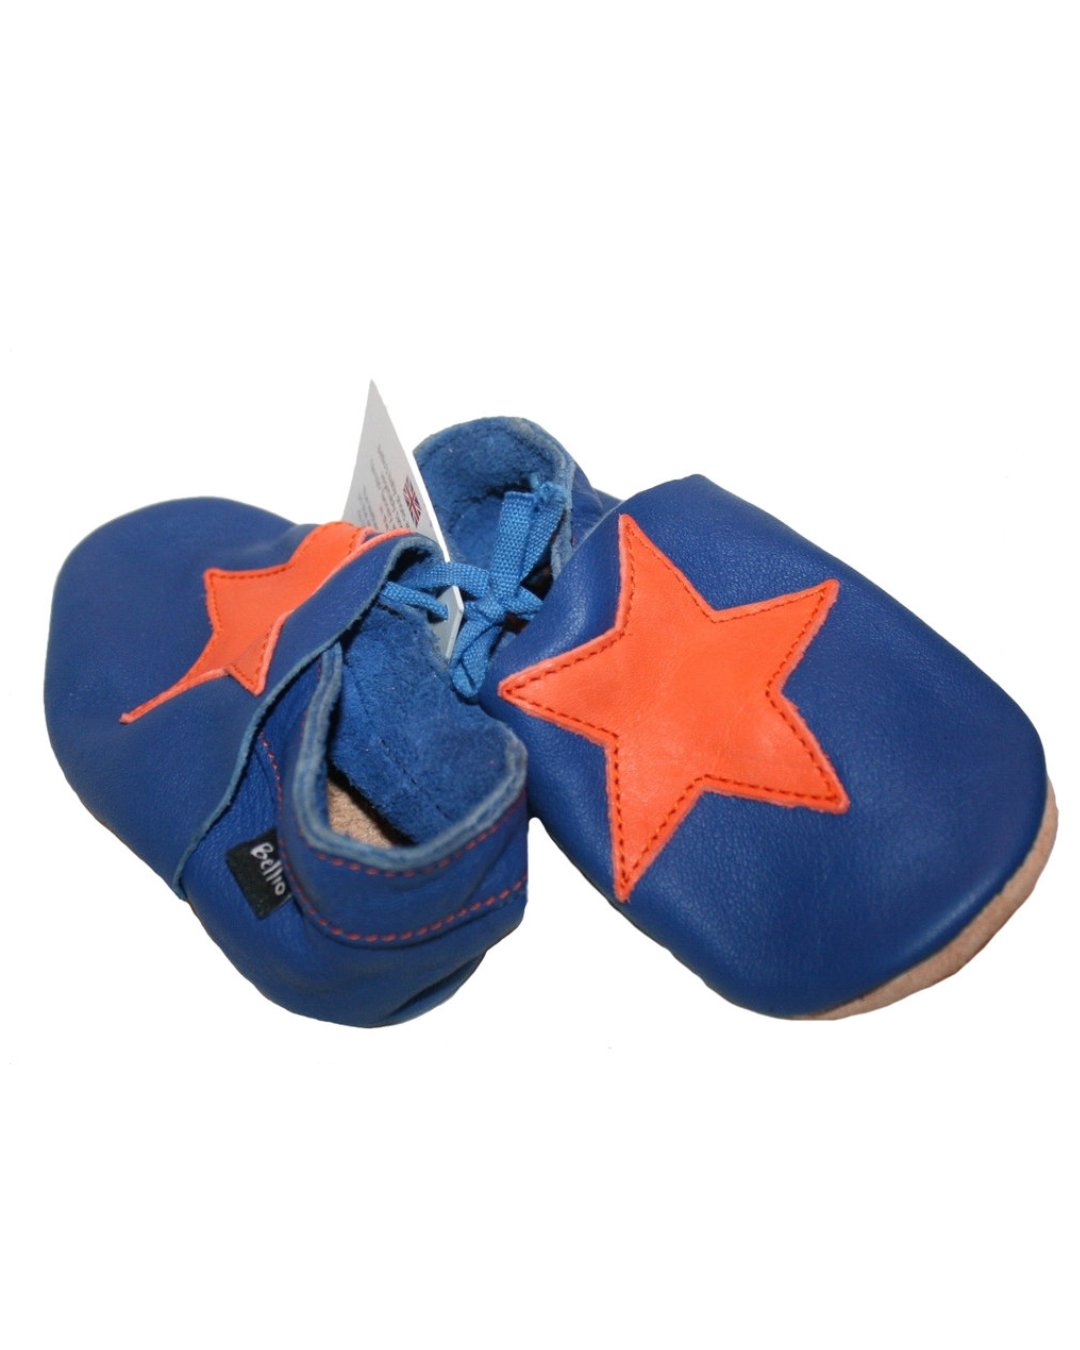 Blaue Krabbelschuhe mit Stern in Orange, aus Bioleder